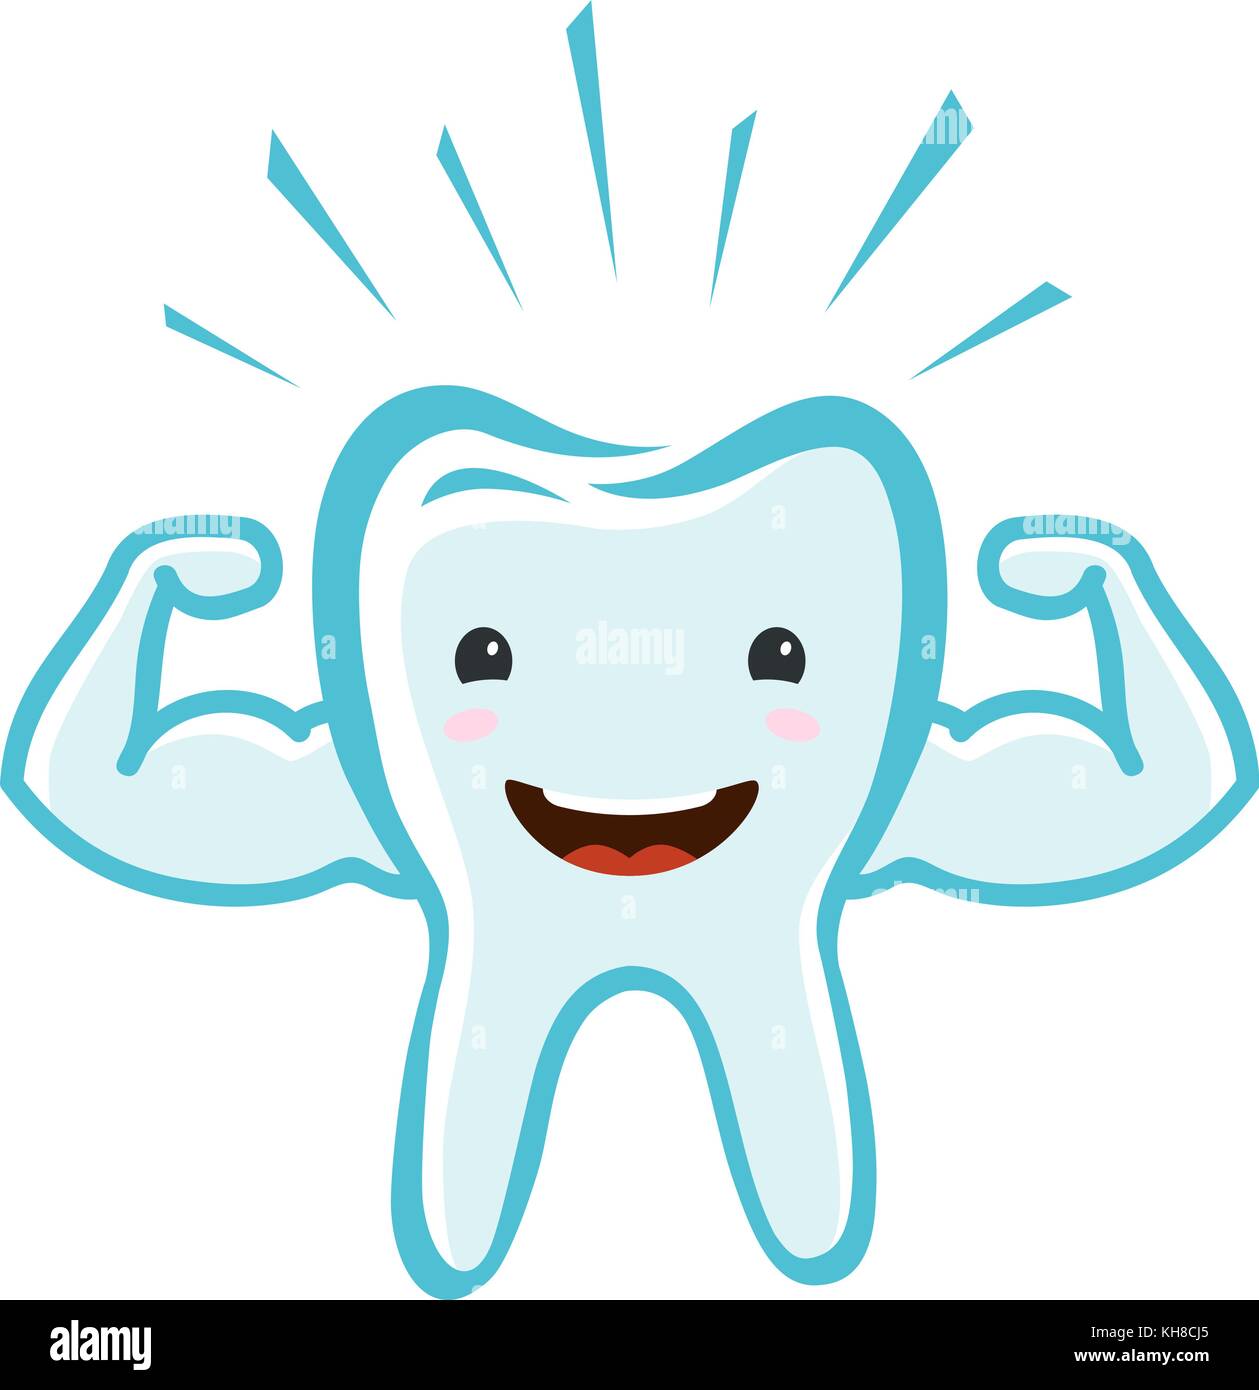 Glücklicher gesunder Zahn. Zahnklinik, zahnmedizinisches Konzept. Illustration des Zeichentrickvektors Stock Vektor